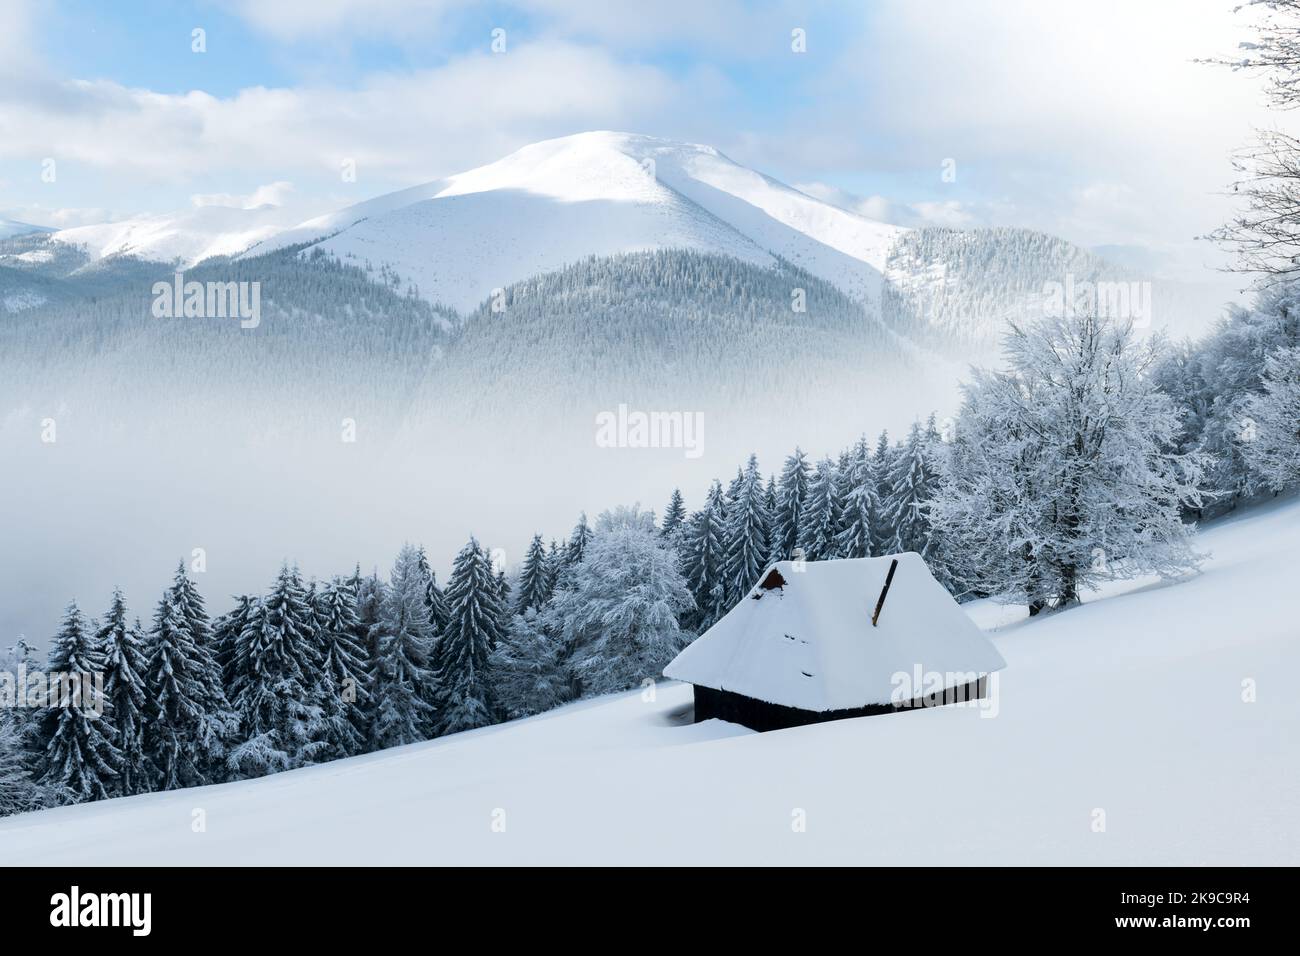 Paysage fantastique avec des montagnes enneigées, des arbres et une cabine en bois. Carpathian montagnes, Ukraine, Europe Banque D'Images